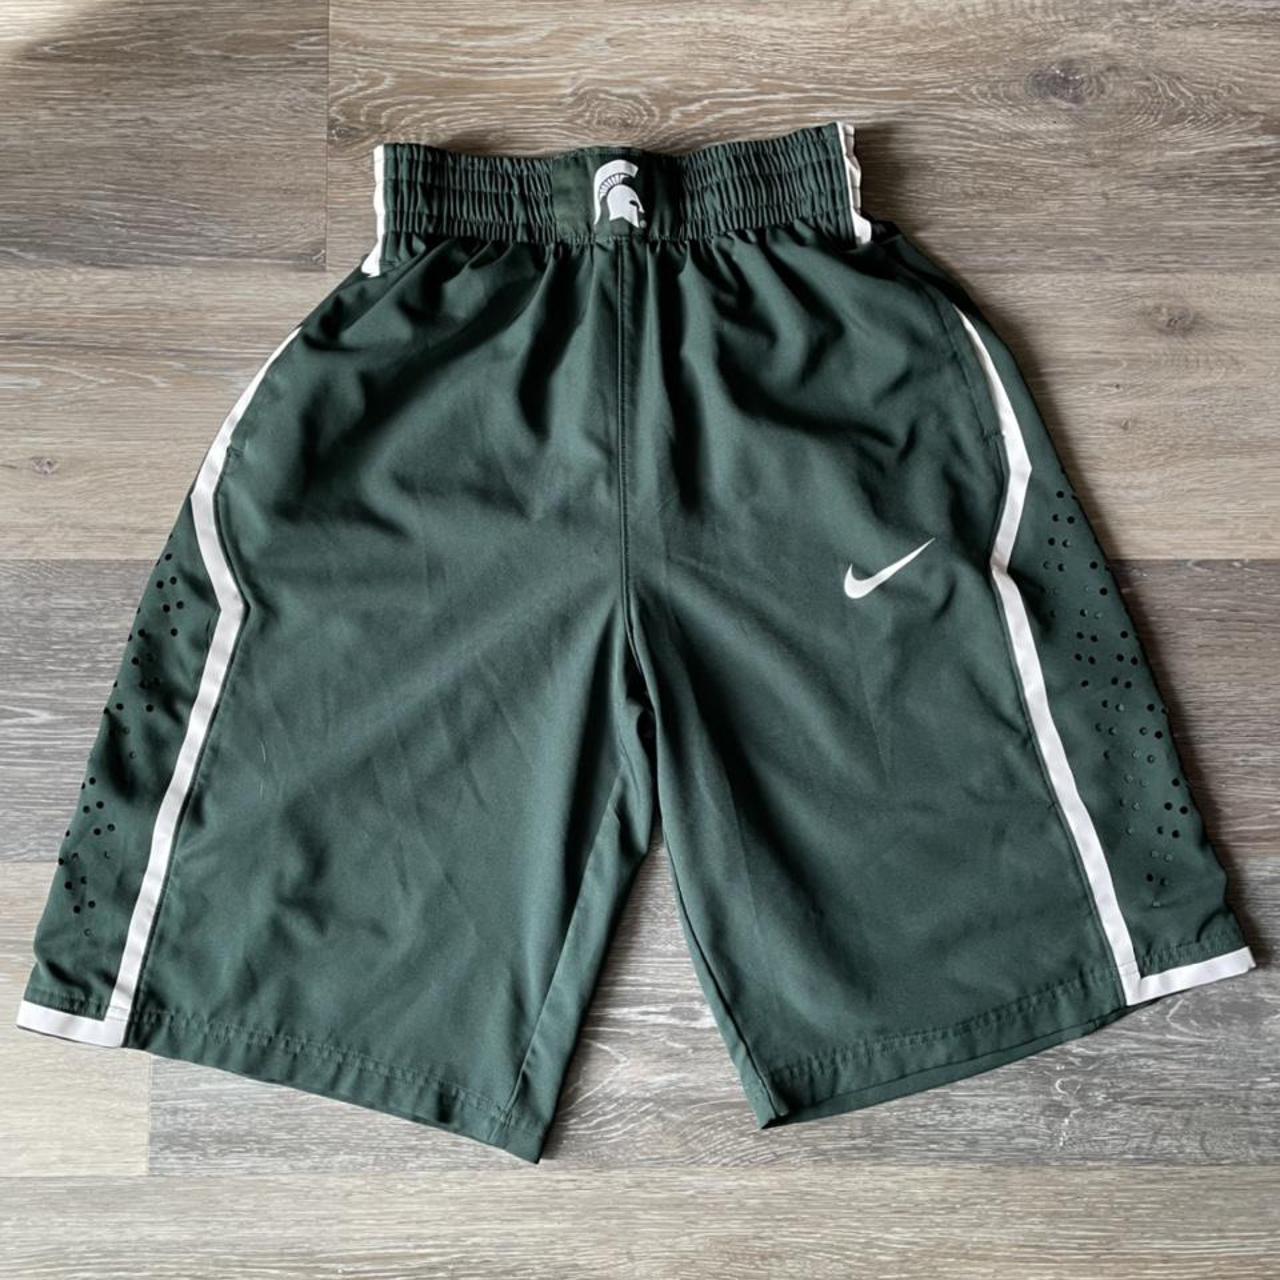 Spartans Basketball Shorts